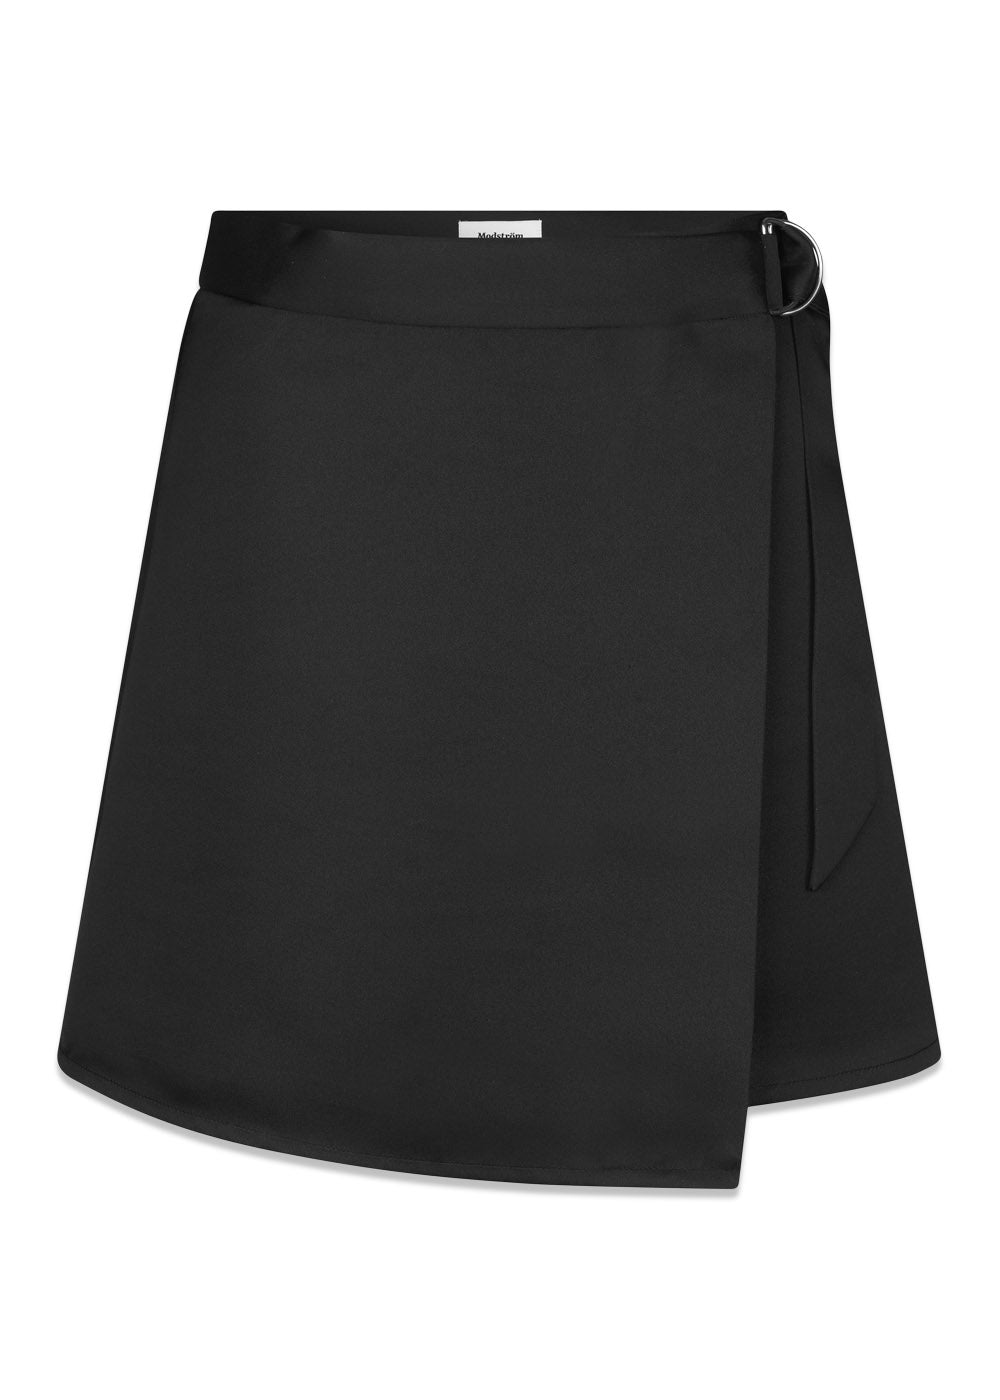 Modströms GavinMD skirt - Black. Køb skirts her.